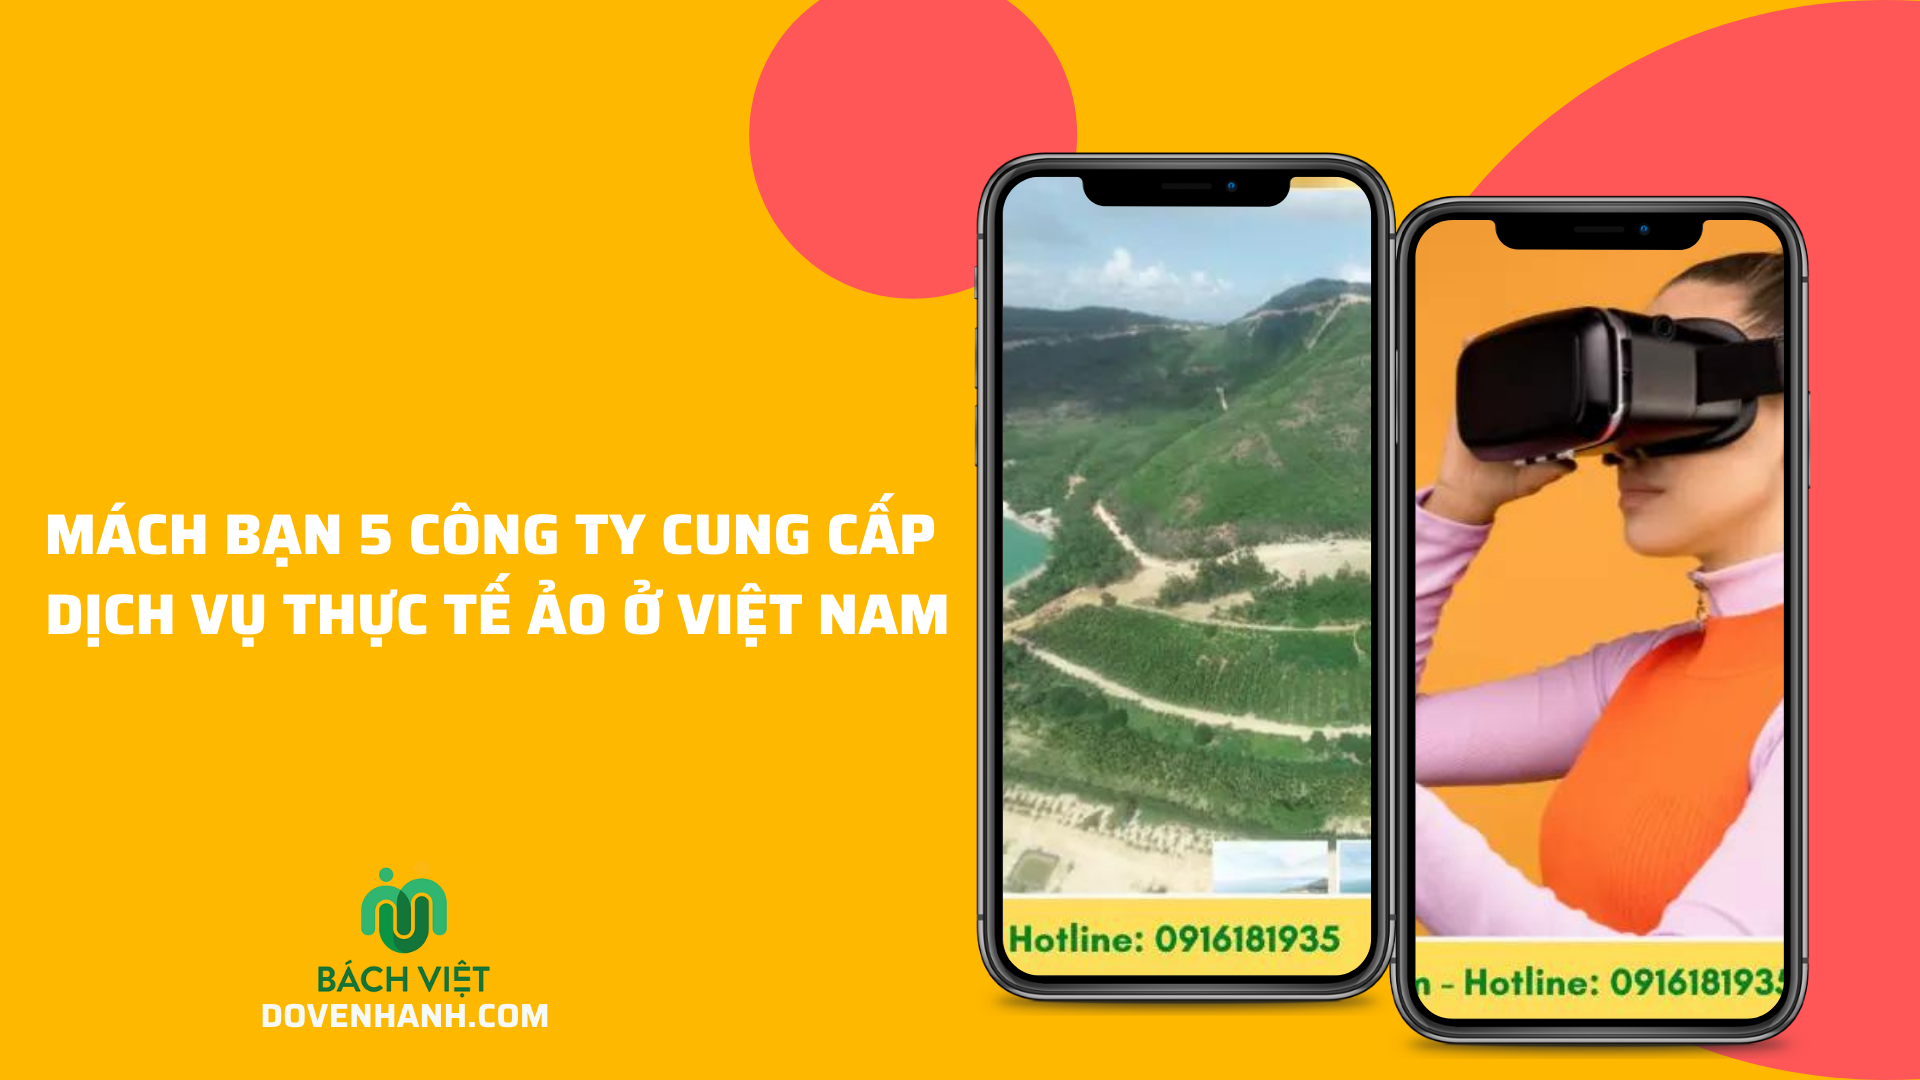 Mách bạn 5 công ty cung cấp dịch vụ thực tế ảo ở Việt Nam